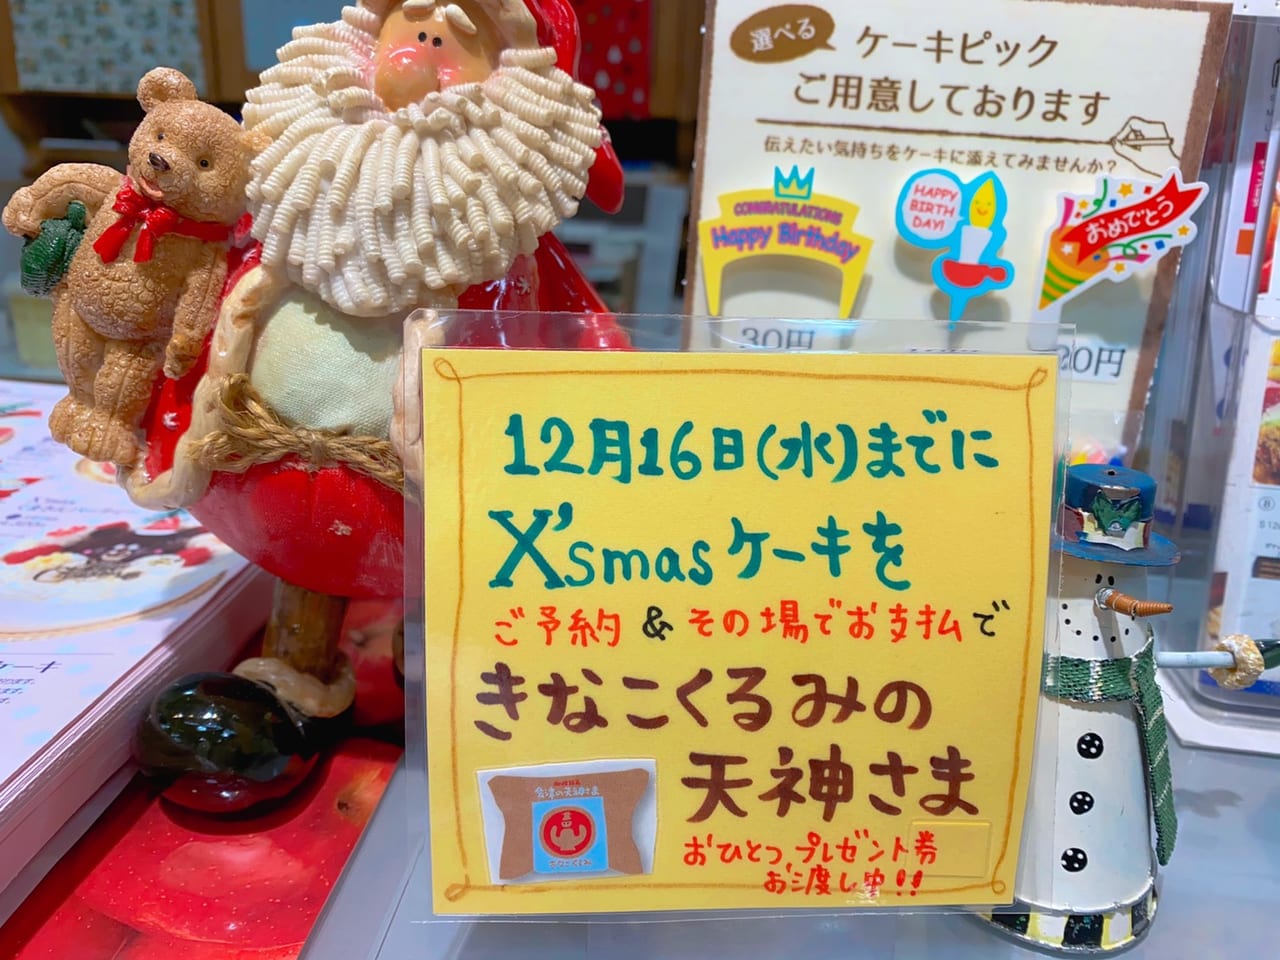 会津地方 クリスマスケーキご予約で新商品のプレゼント お菓子の蔵太郎庵で新作が続々登場します 号外net 会津若松市 会津地方